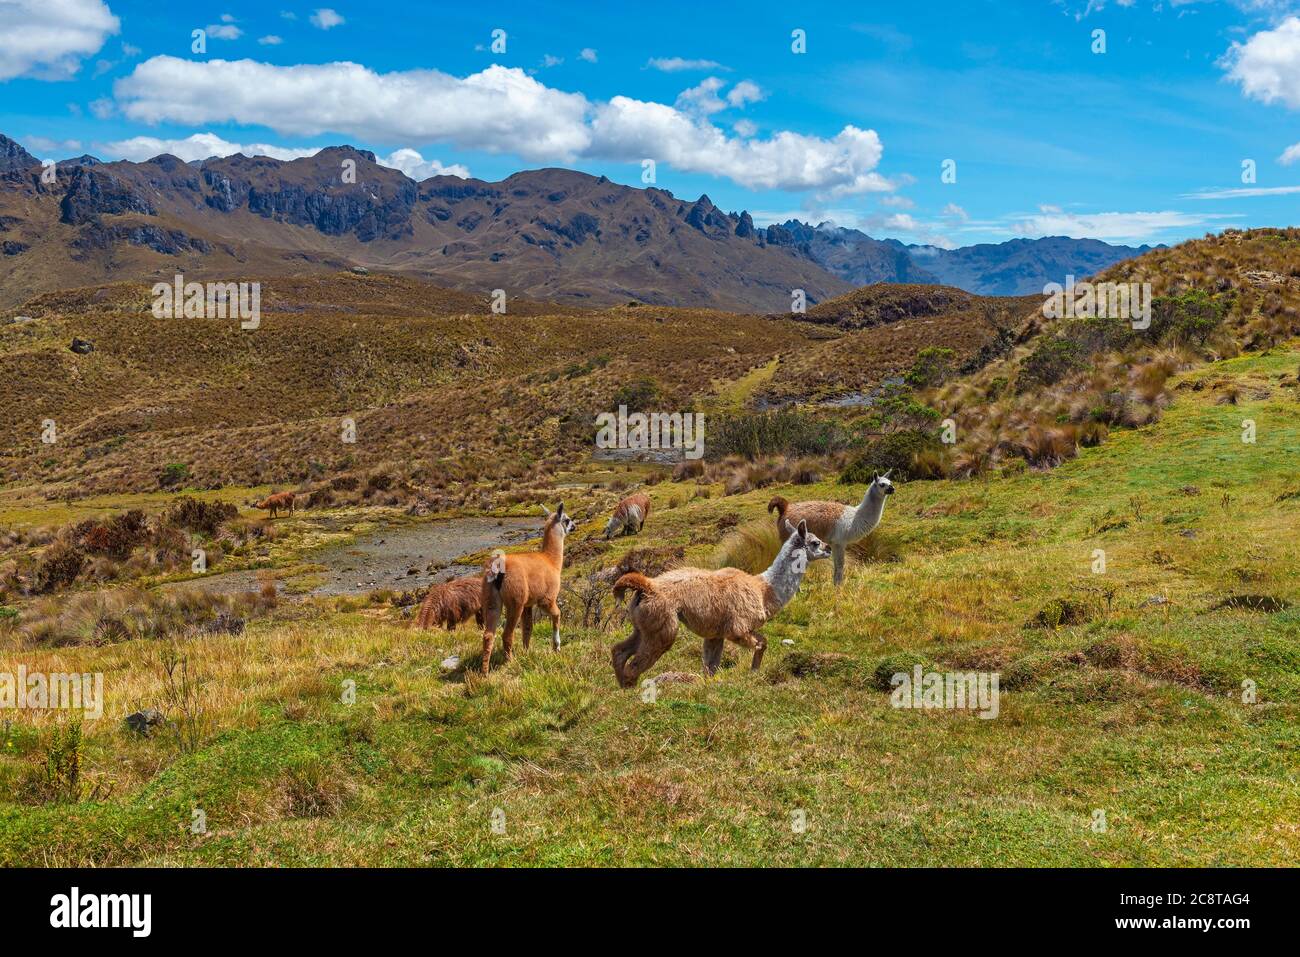 Un troupeau de Llama (Lama glama) dans le parc national de cajas, montagnes des Andes, Cuenca, Equateur. Banque D'Images